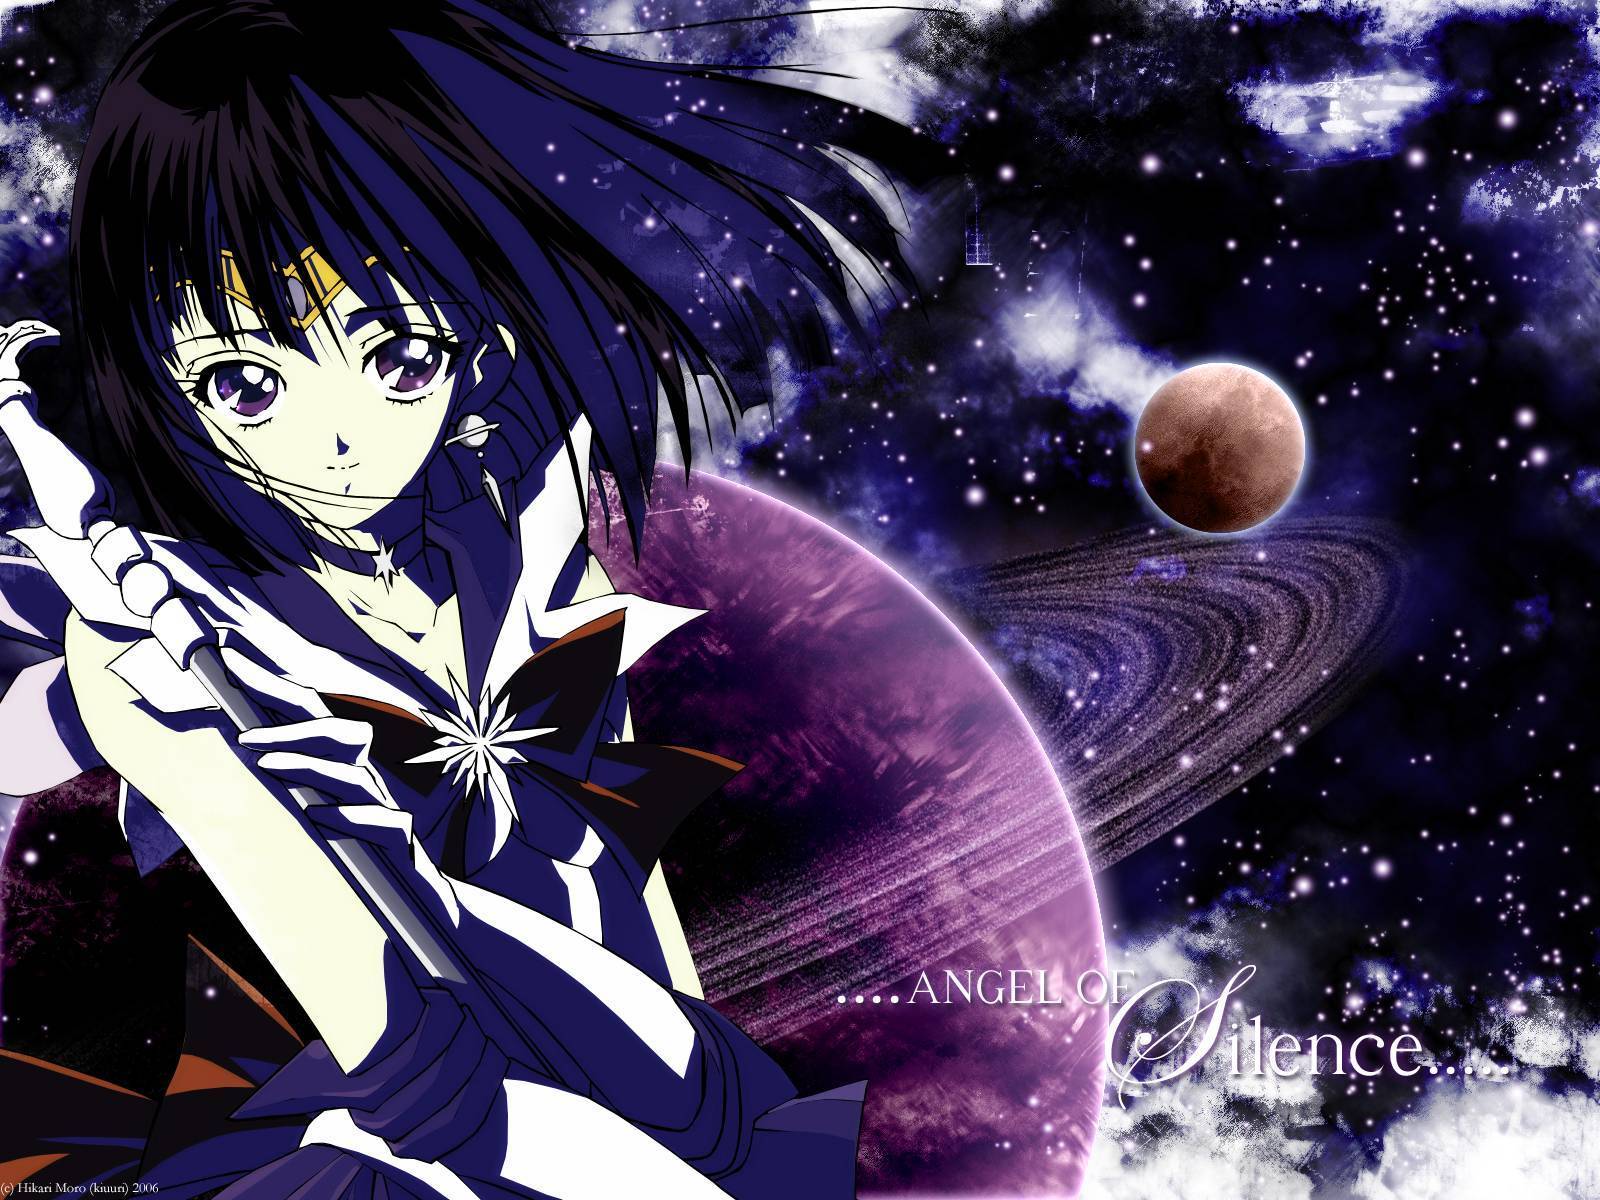 Japanese Sailor Moon Image Saturn HD Wallpaper And